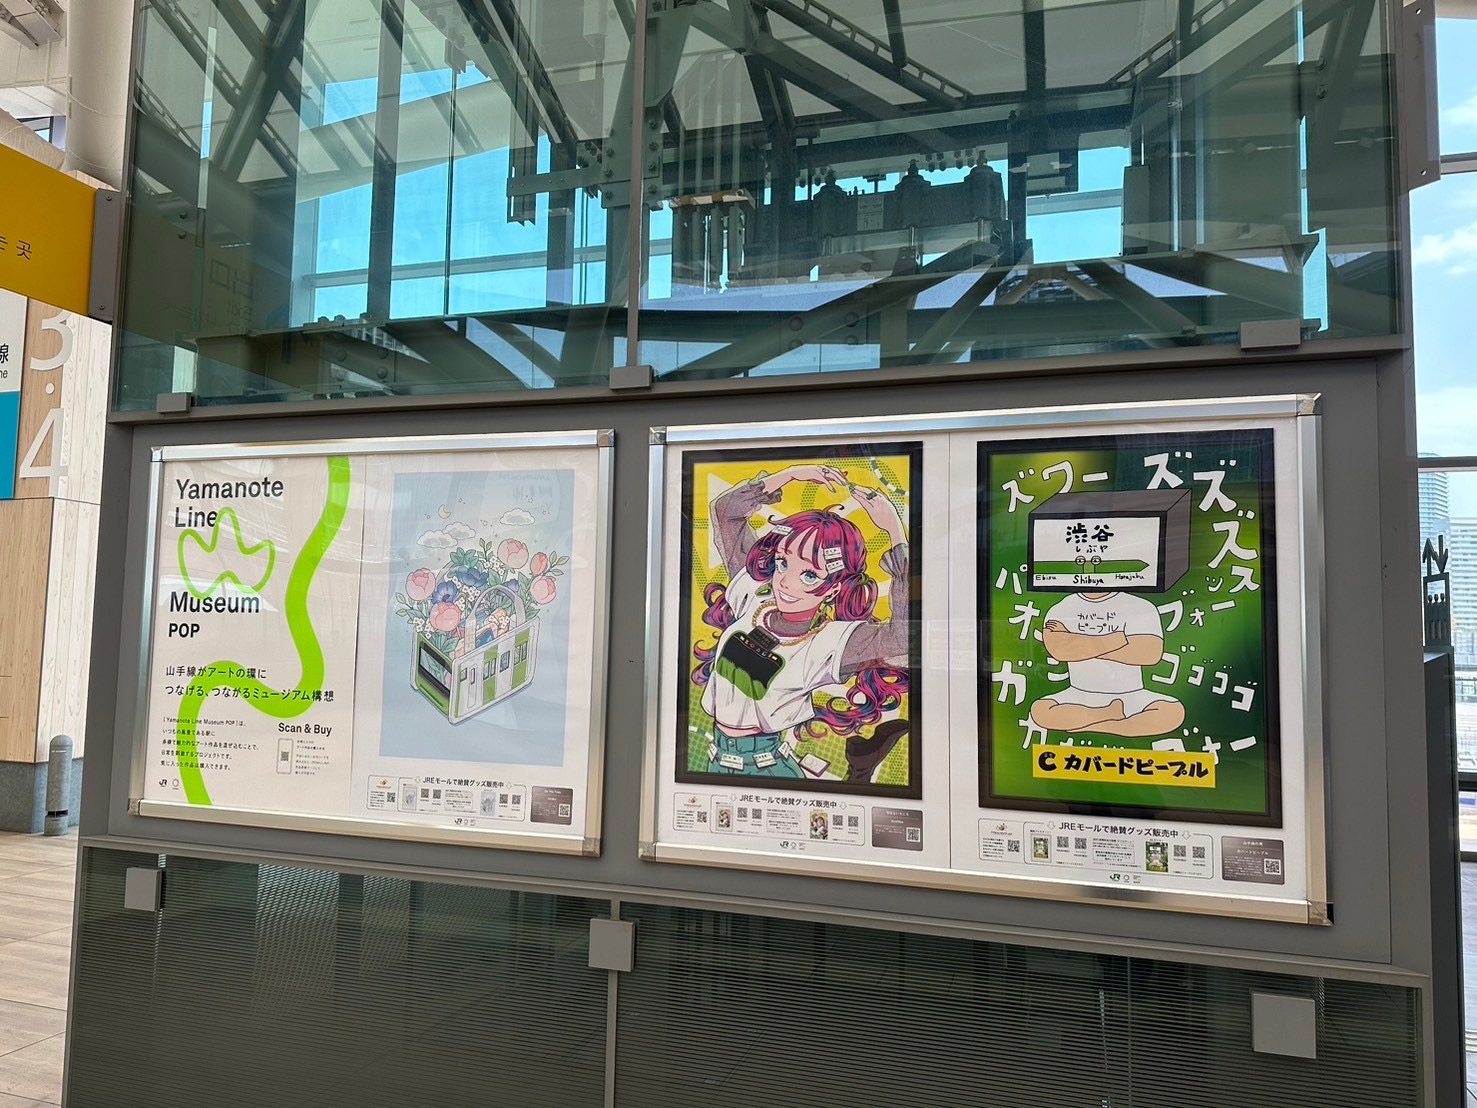 【第2弾】Yamanote Line Museum POPの作品の展示箇所を入れ替え